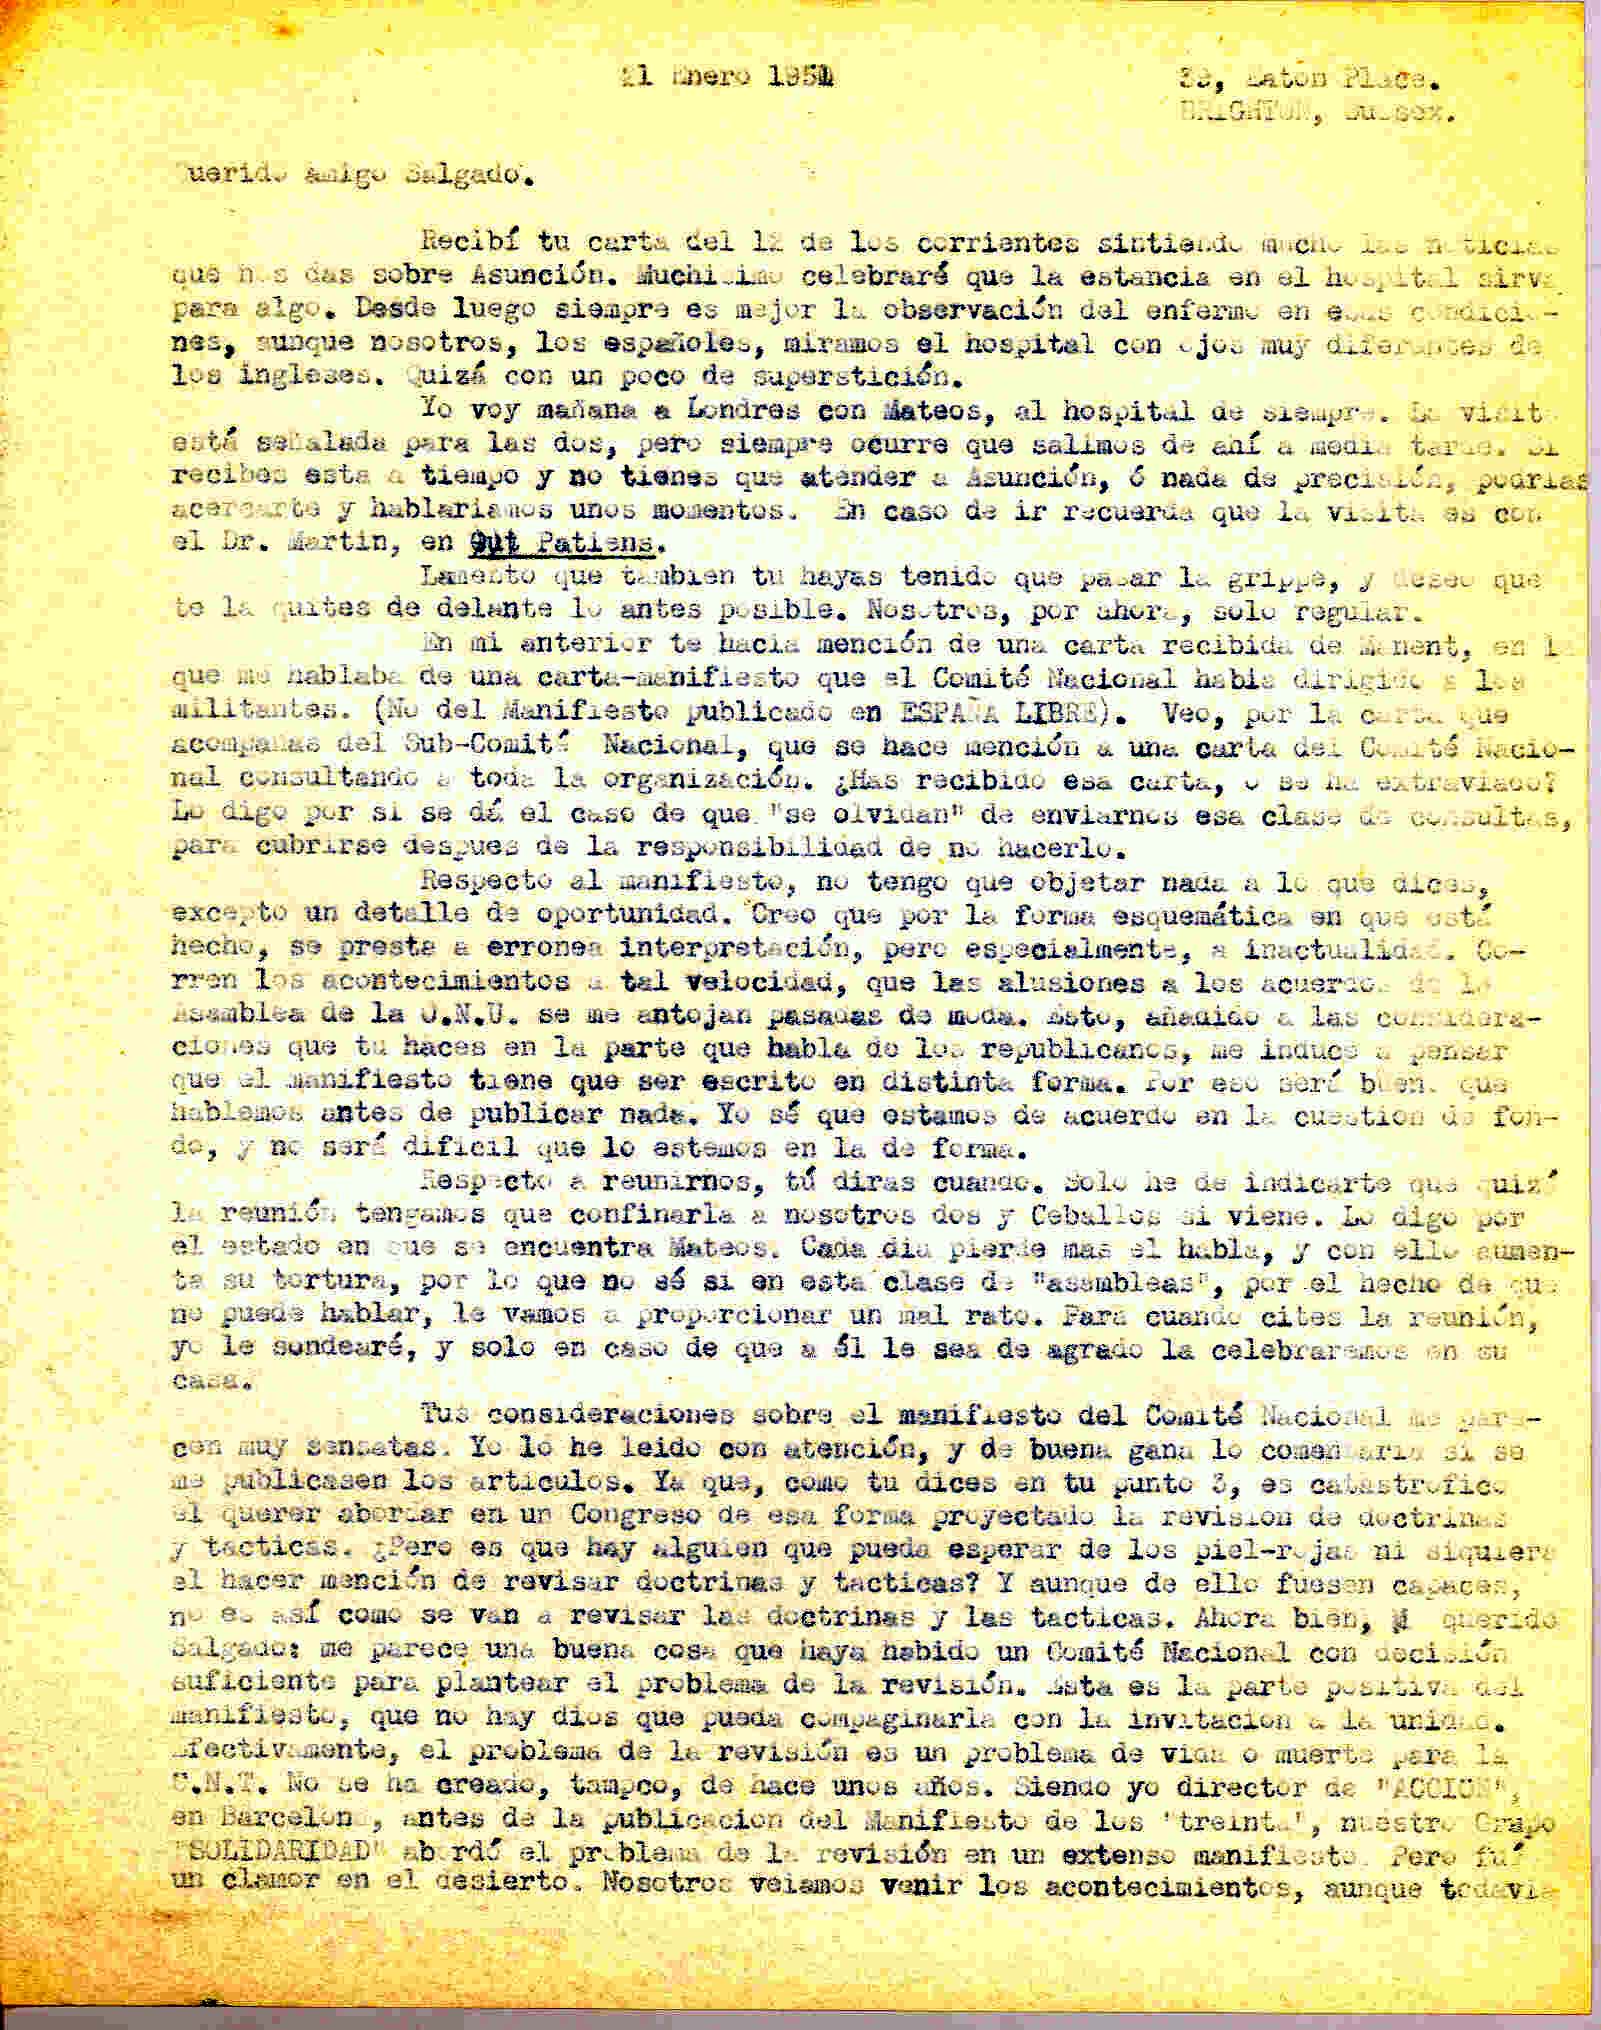 Carta a Manuel Salgado sobre carta-manifiesto del Comité Nacional dirigido a los militantes y sobre el manifiesto del Subcomité Nacional